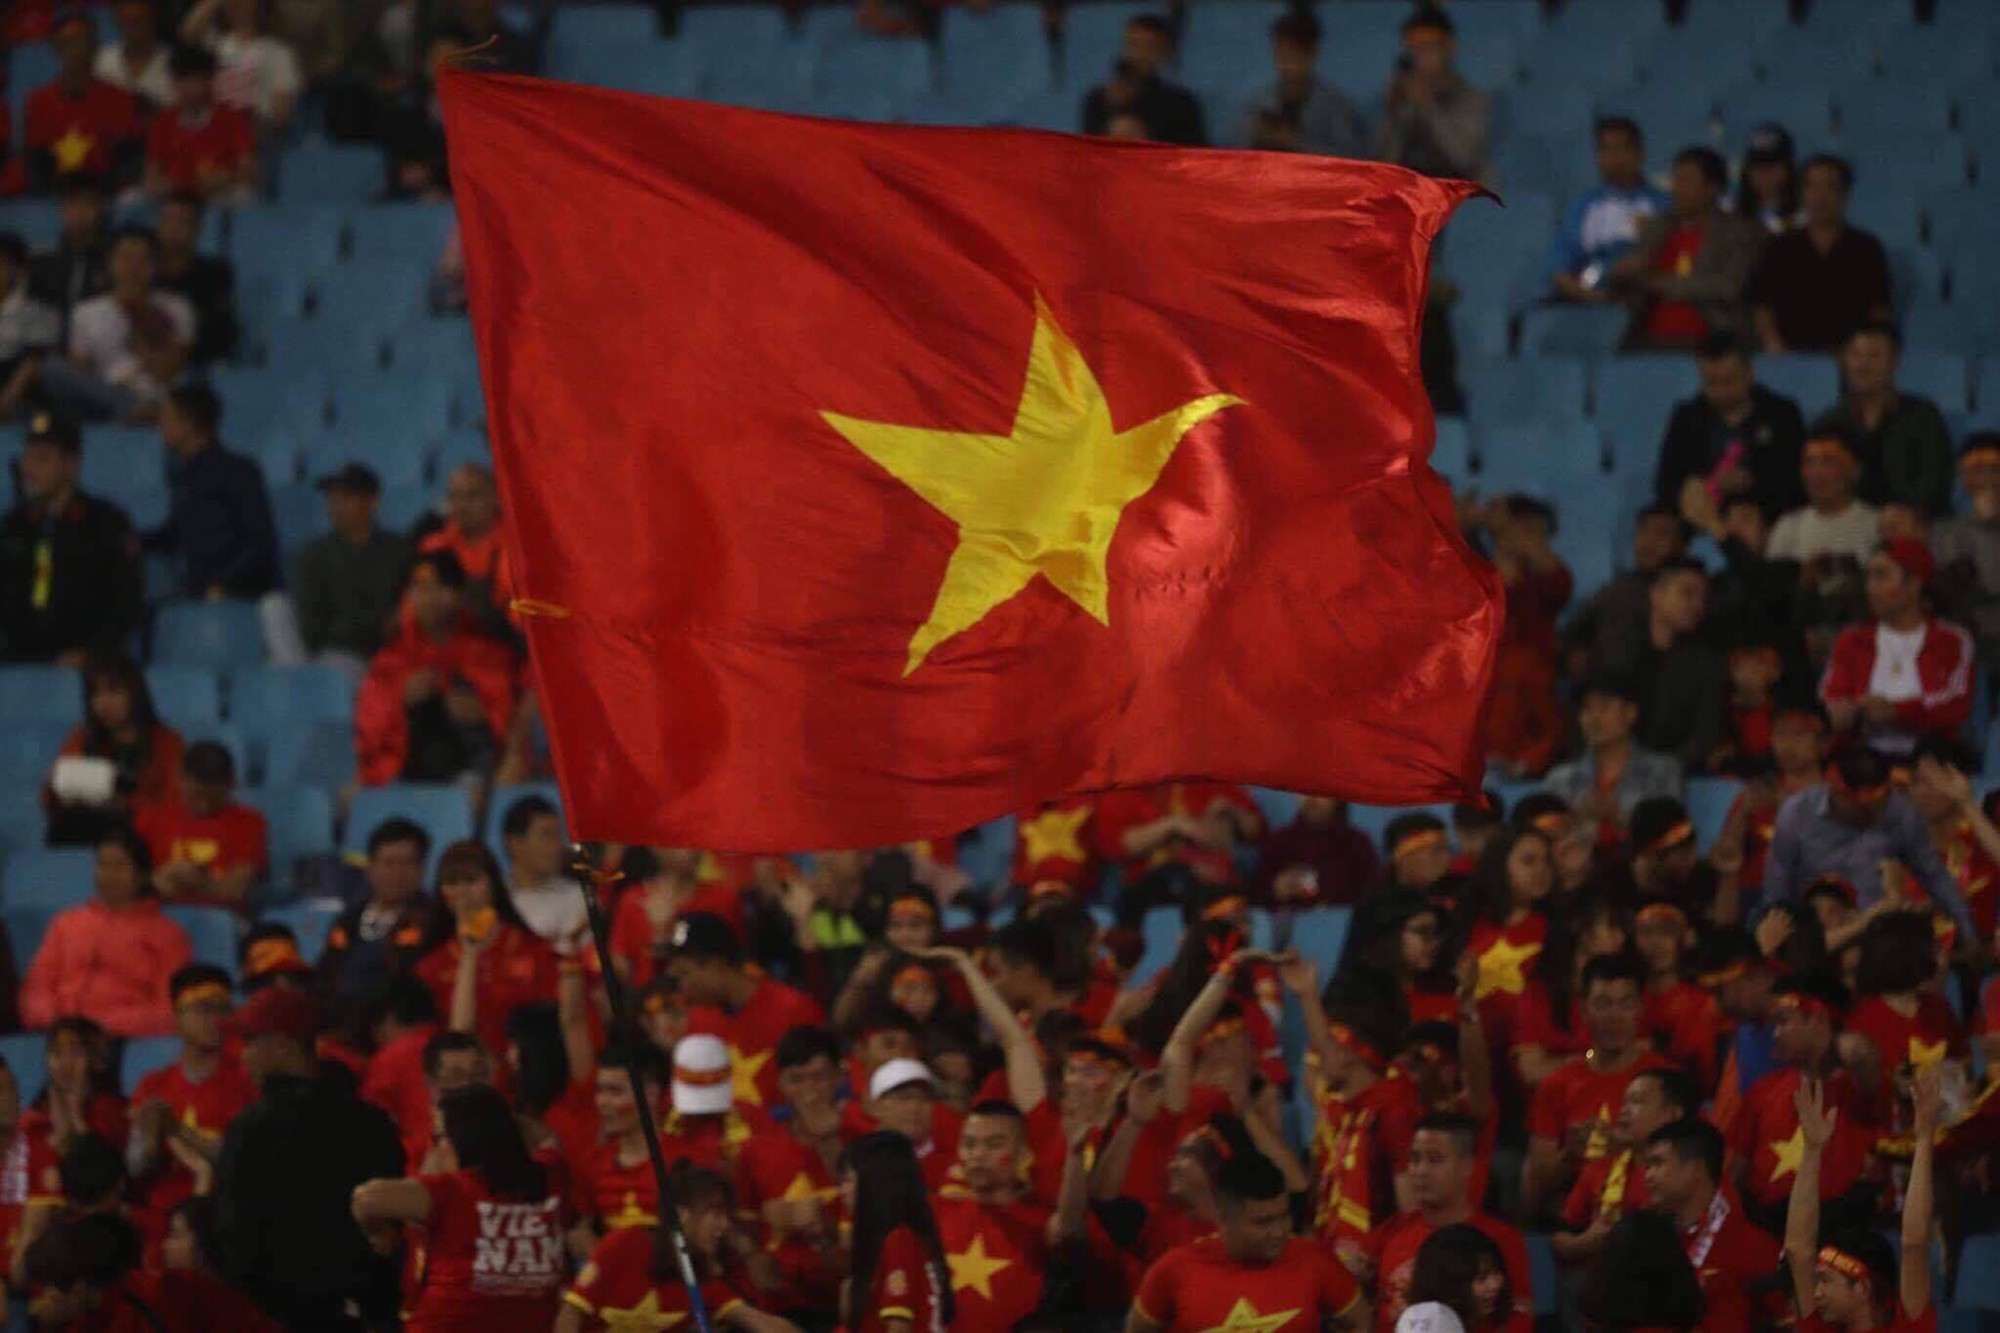 Đội tuyển Bóng đá Việt Nam dưới sự dẫn dắt của HLV Park Hang-seo đã rất tự tin đối đầu với Thái Lan. Trên địa chỉ web của chúng tôi, bạn sẽ có cơ hội xem qua những khoảnh khắc ấn tượng và cảm nhận niềm tự hào về đội tuyển Bóng đá Việt Nam!